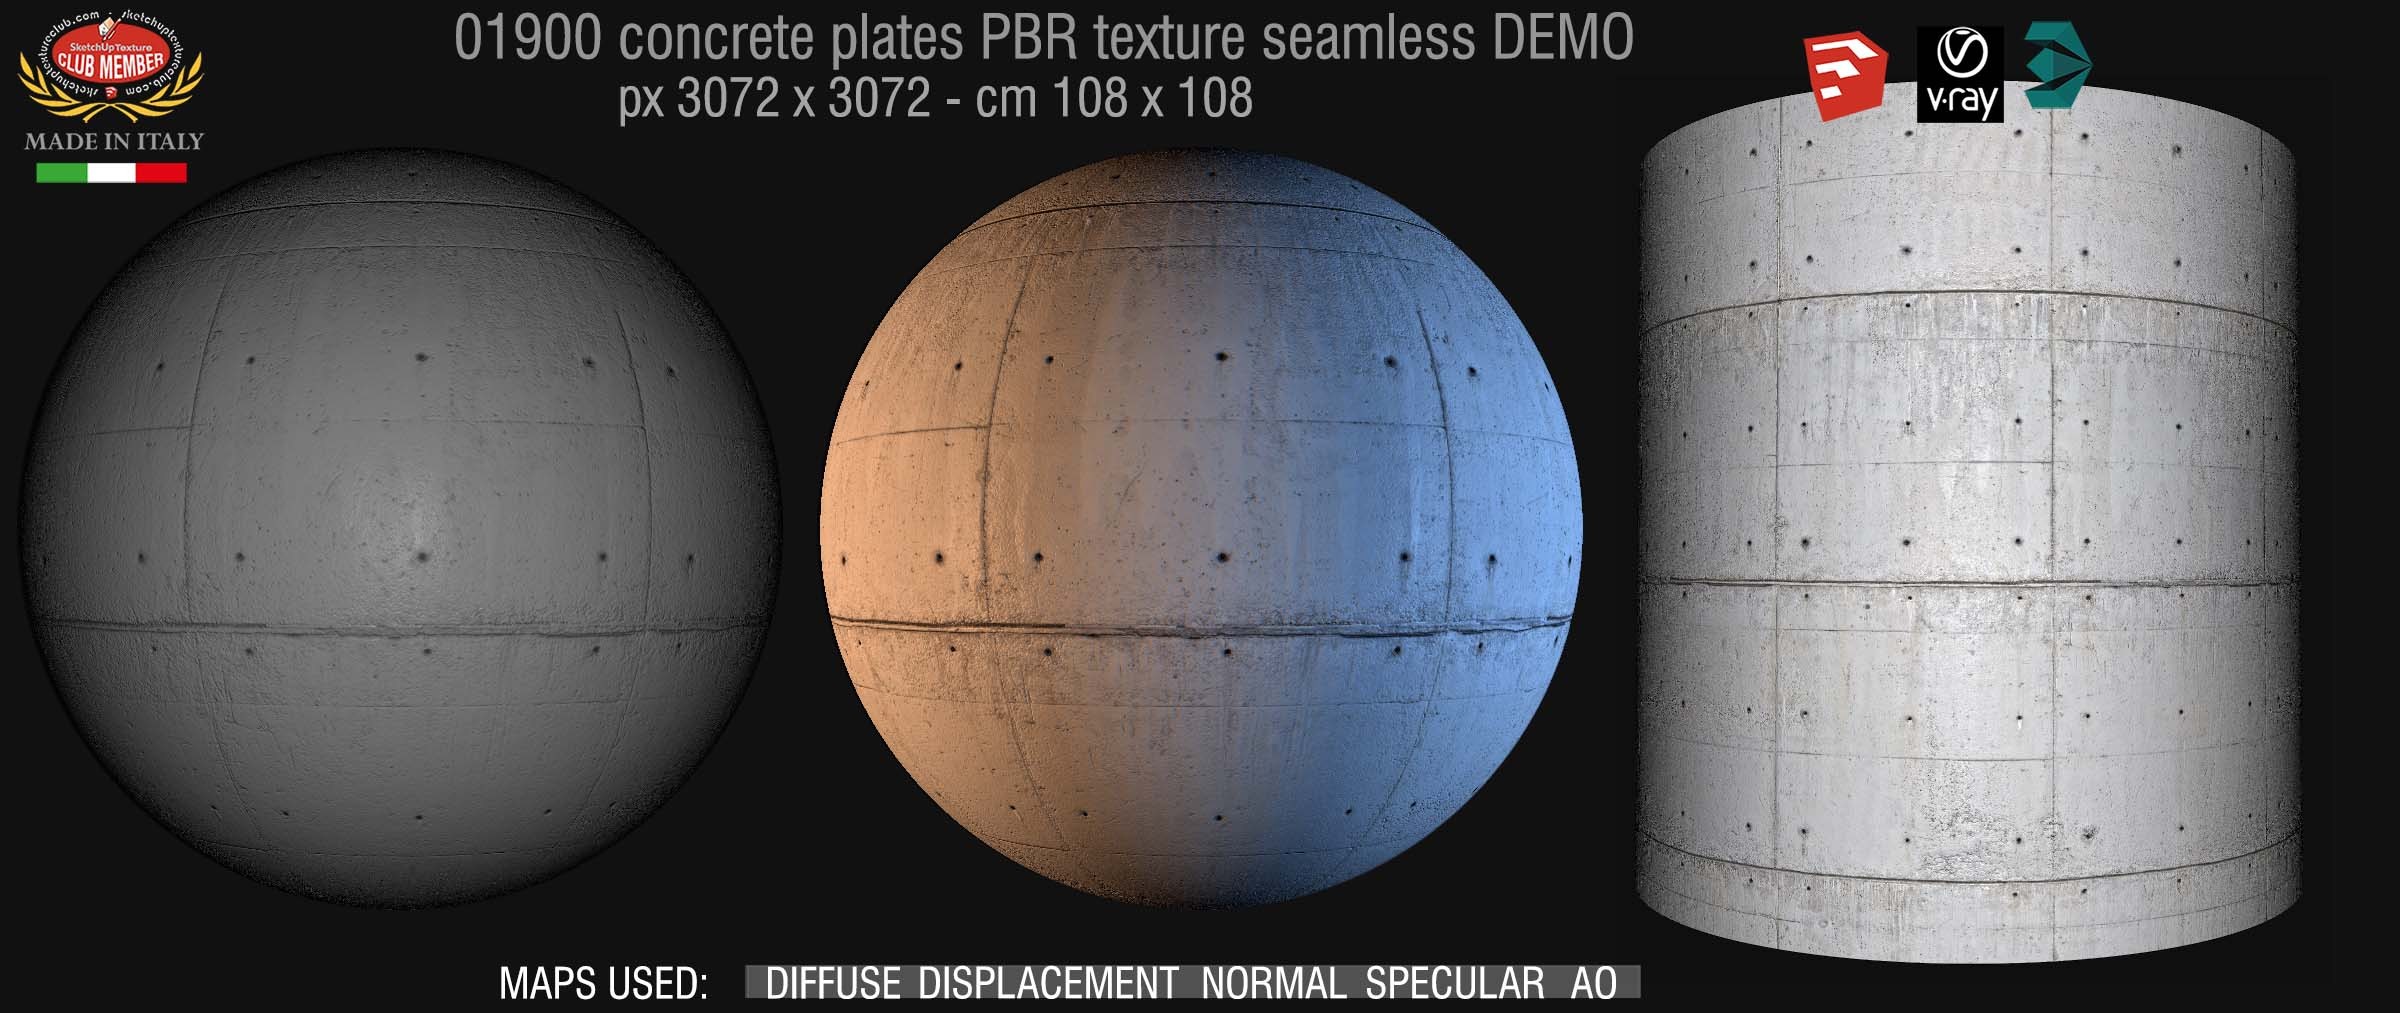 01900 Tadao ando concrete dirty plates PBR seamless texture DEMO